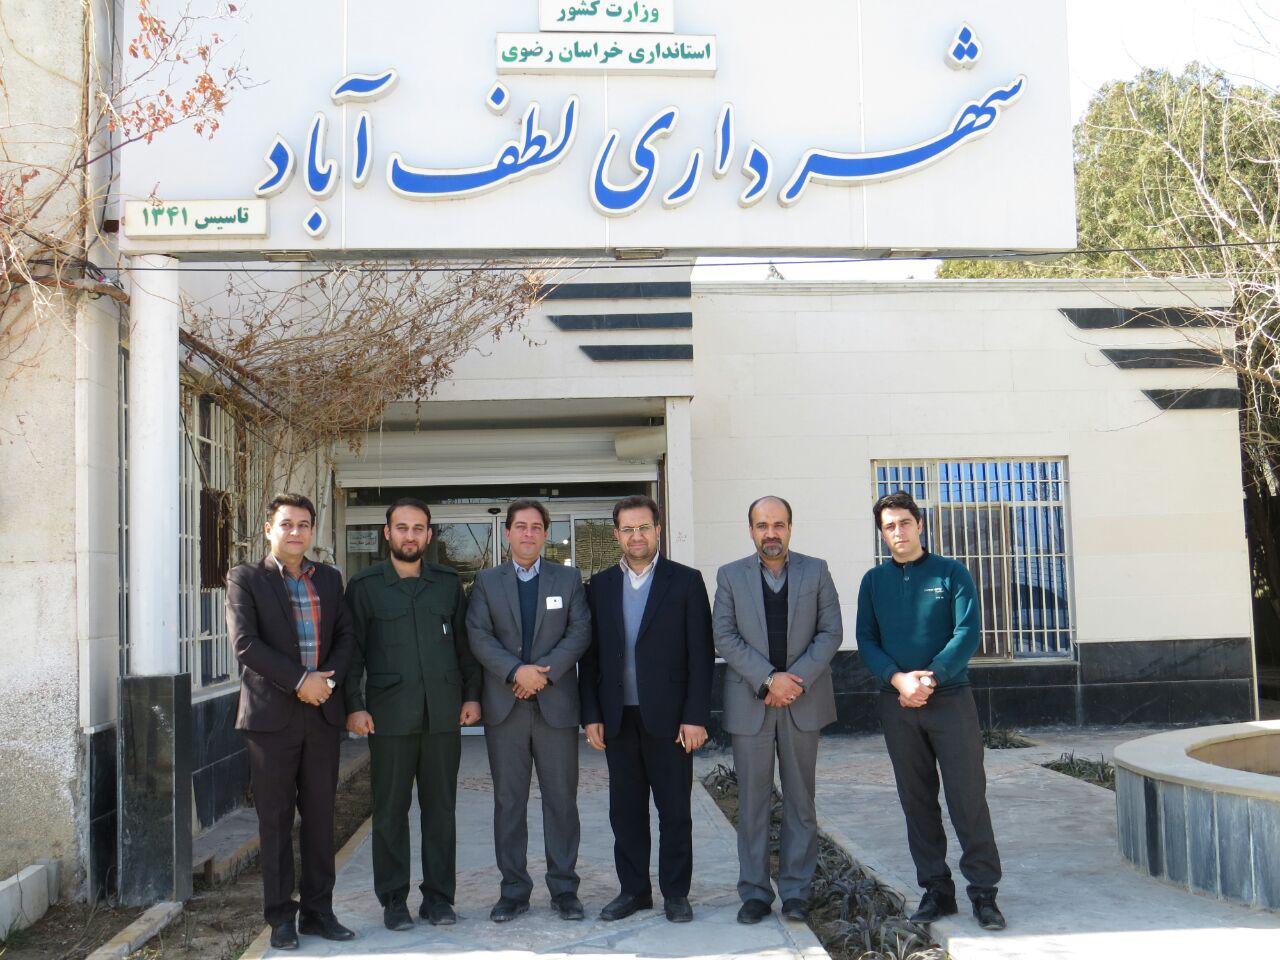 دیدار با هاشم نیا شهردار و مردانی رییس شورای شهری لطف آباد